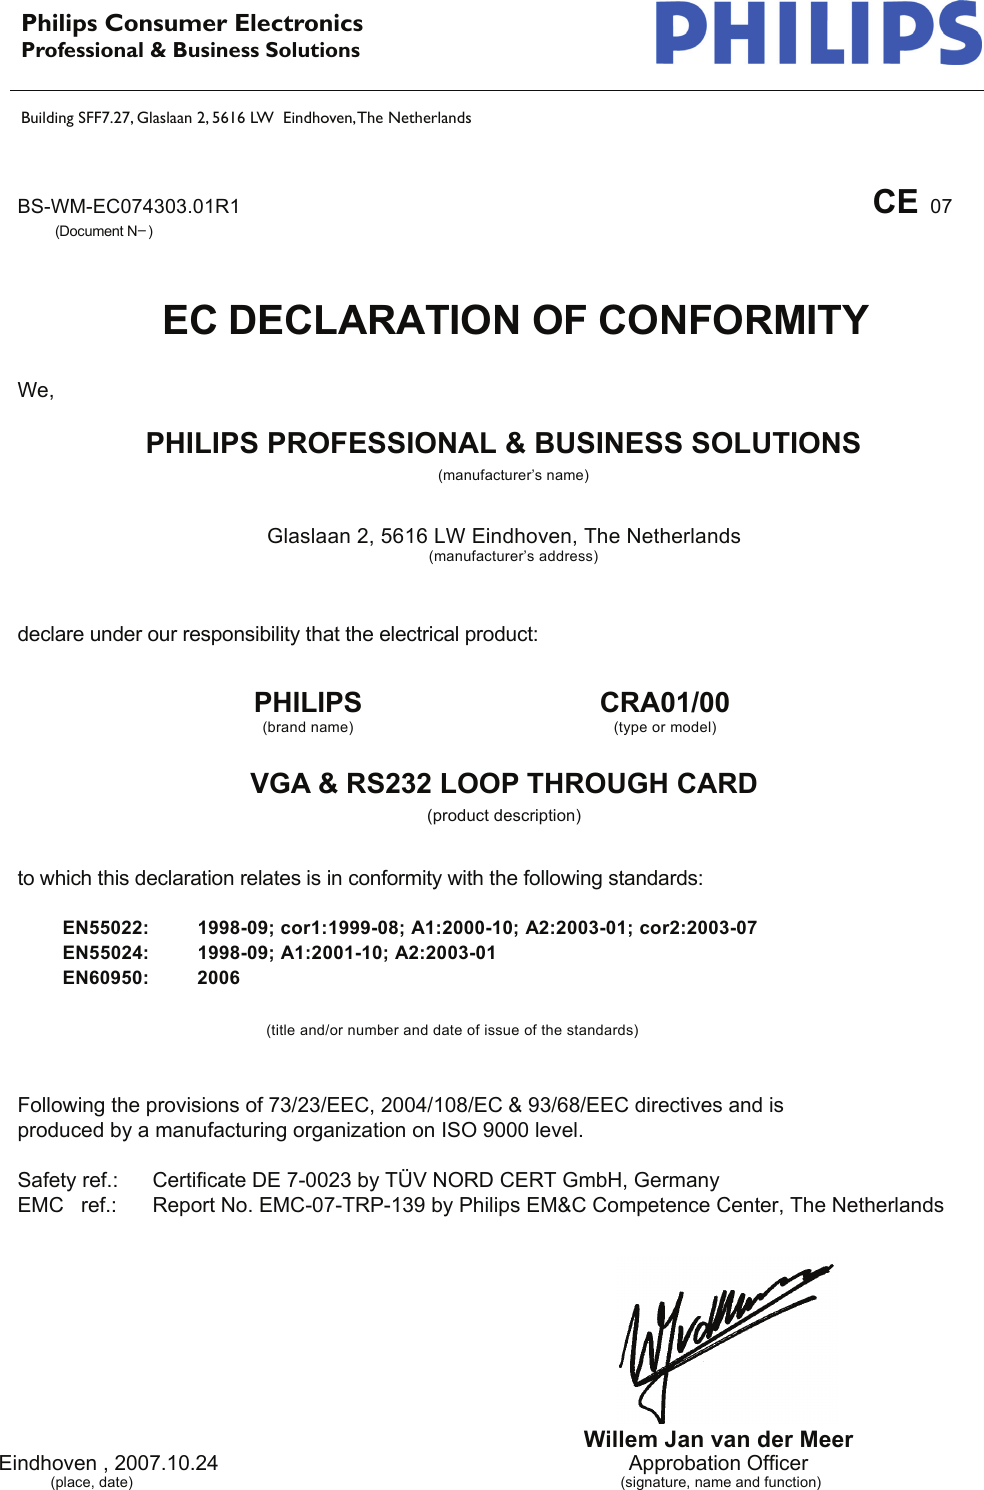 Page 1 of 1 - Philips CRA01/00 EC Declaration Of Conformity User Manual Déclaration De Conformité Cra01 00 Doc Aen